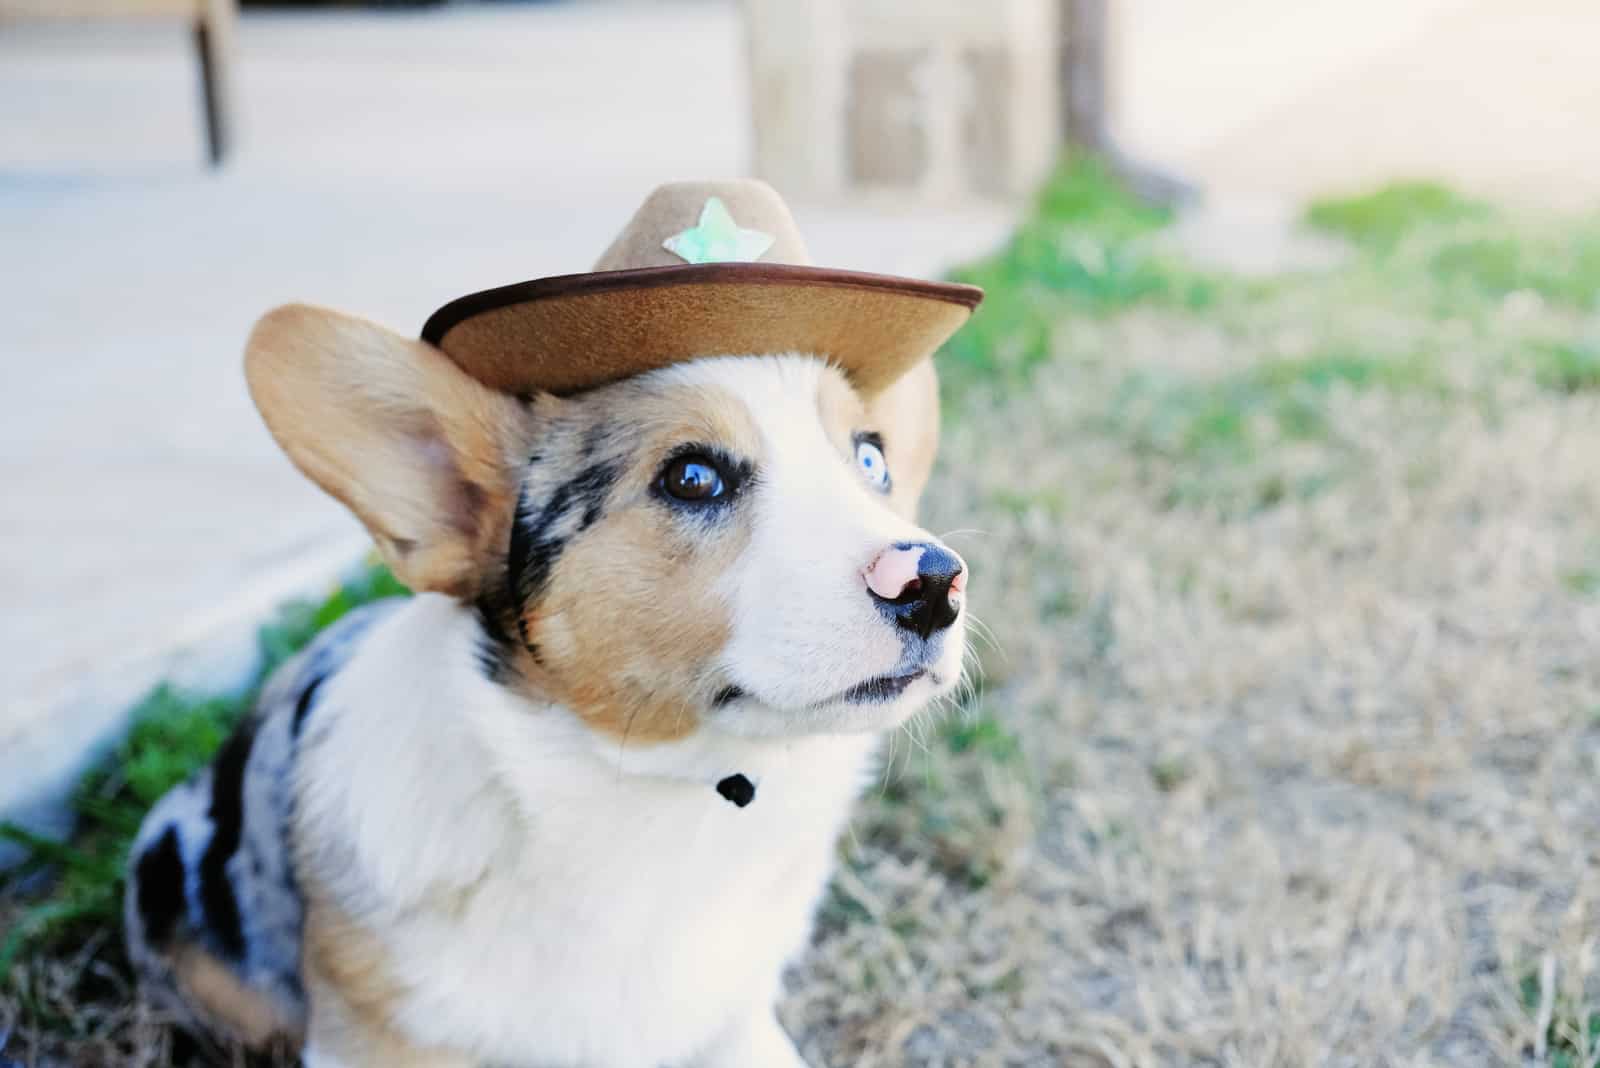 Cute Corgi puppy dog in cowboy hat